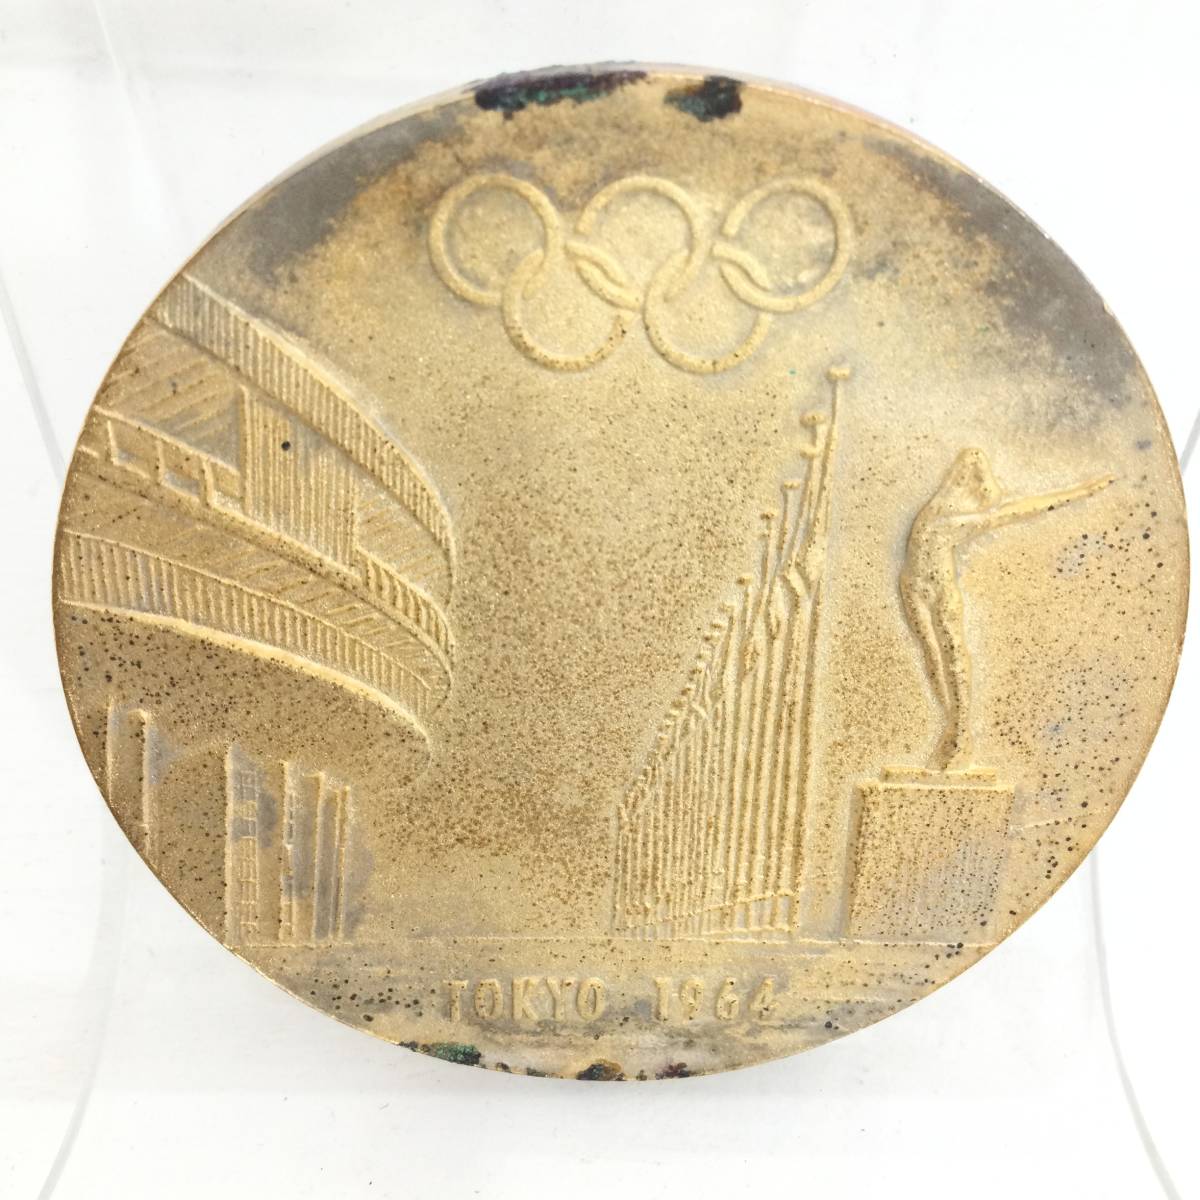 【保管品】東京オリンピック 1964 記念メダル 金色 ケース入り TOKYO OLYMPIC聖火リレー 記念品レア【H507】_画像5